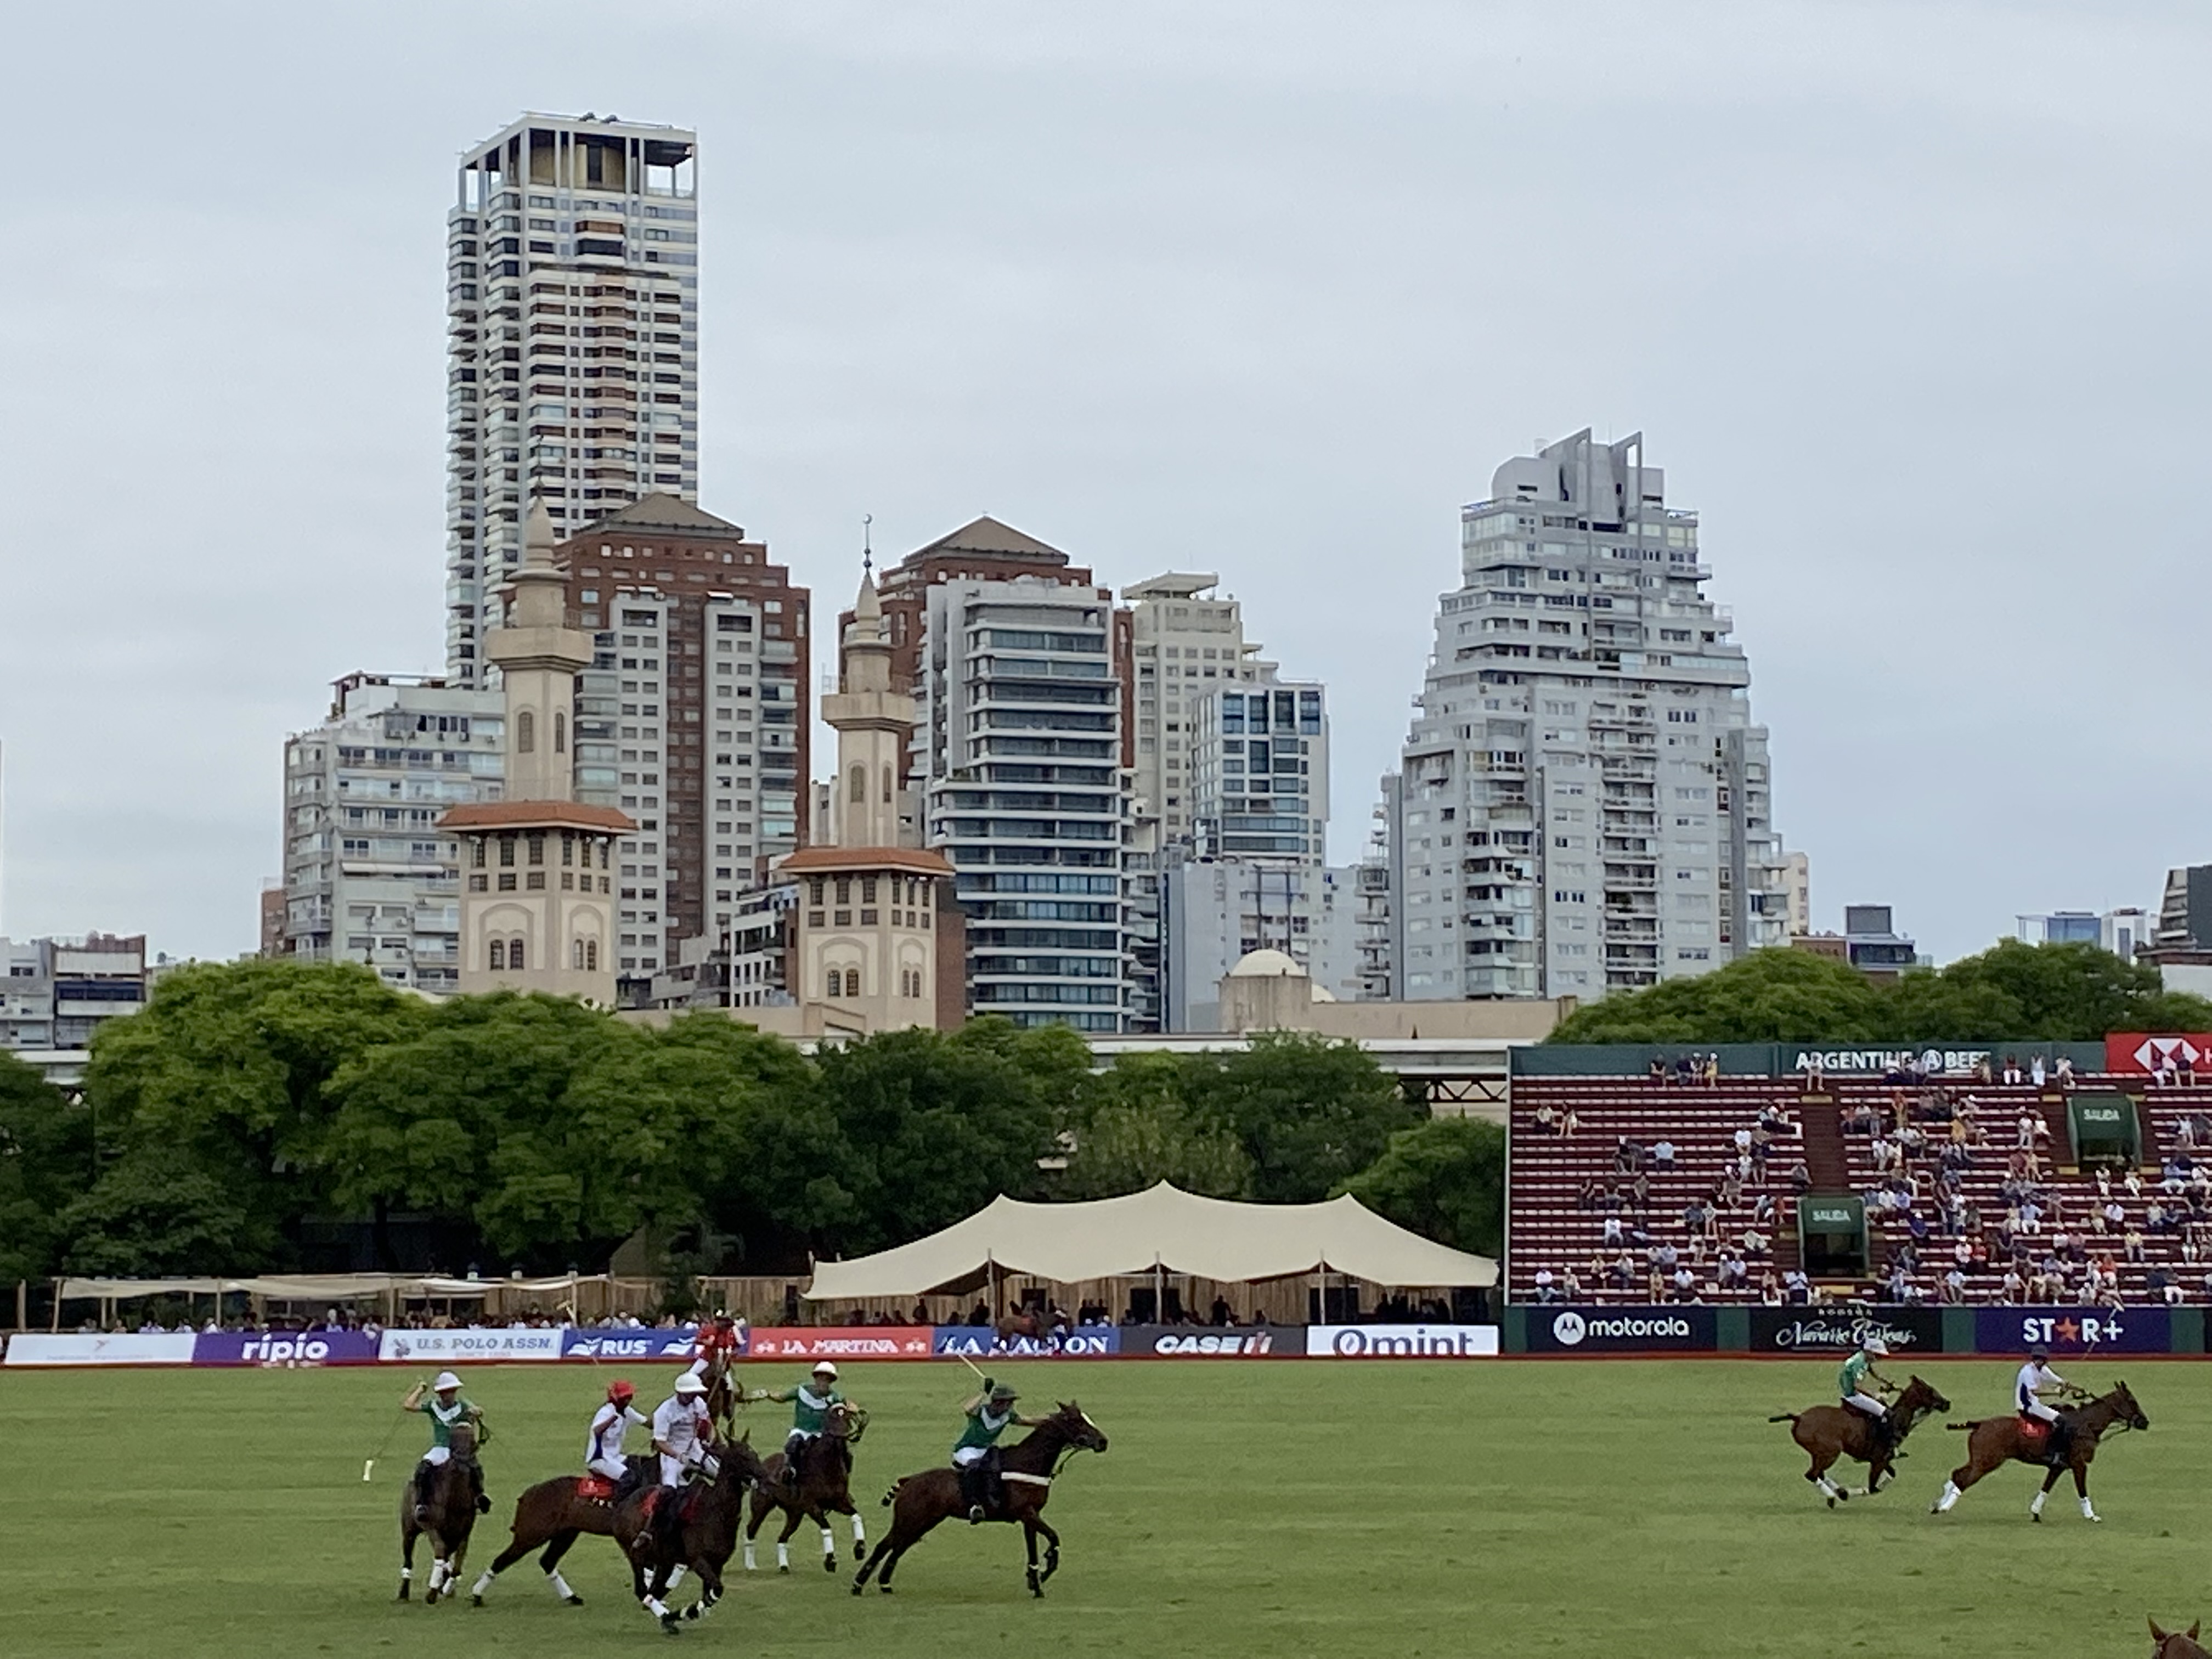 The Argentine Polo Field / SEBASTIÁN FEST